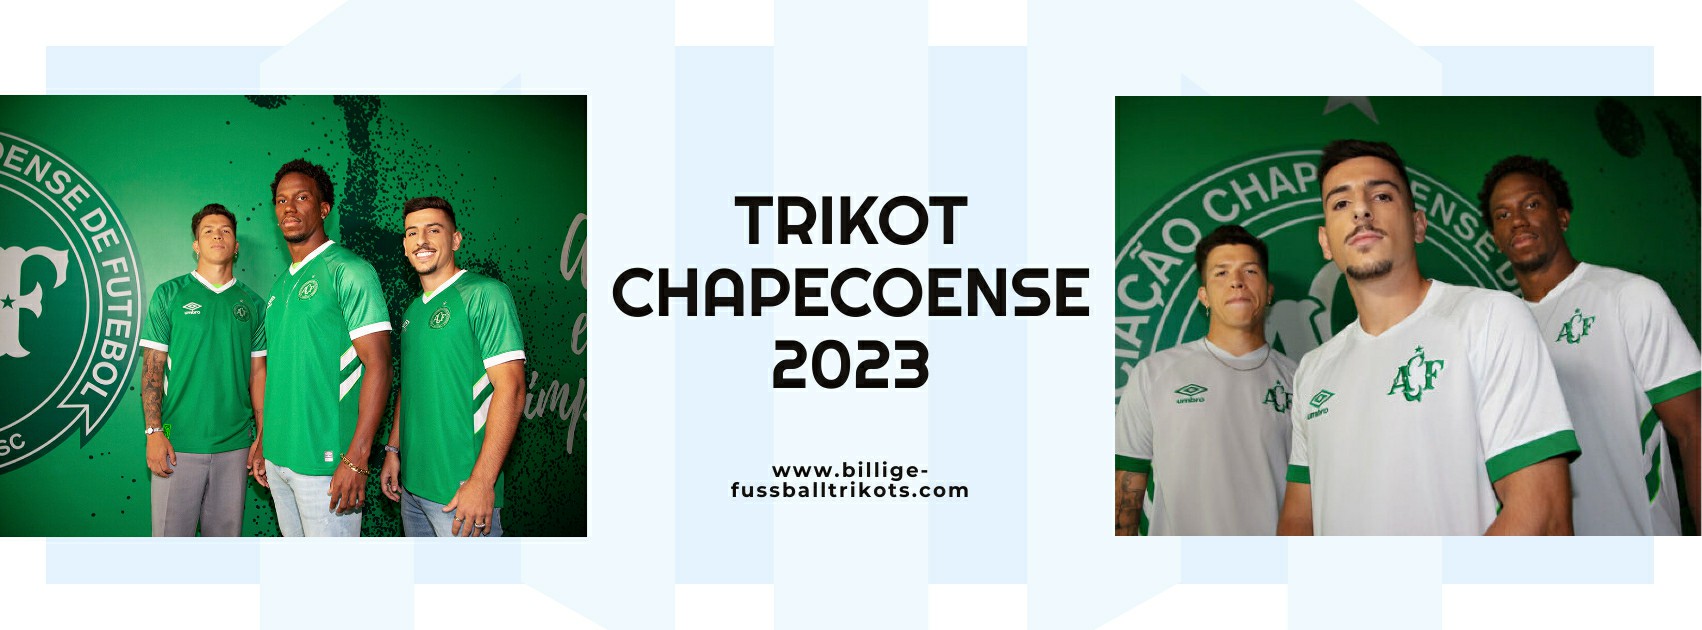 Chapecoense Trikot 2023-2024